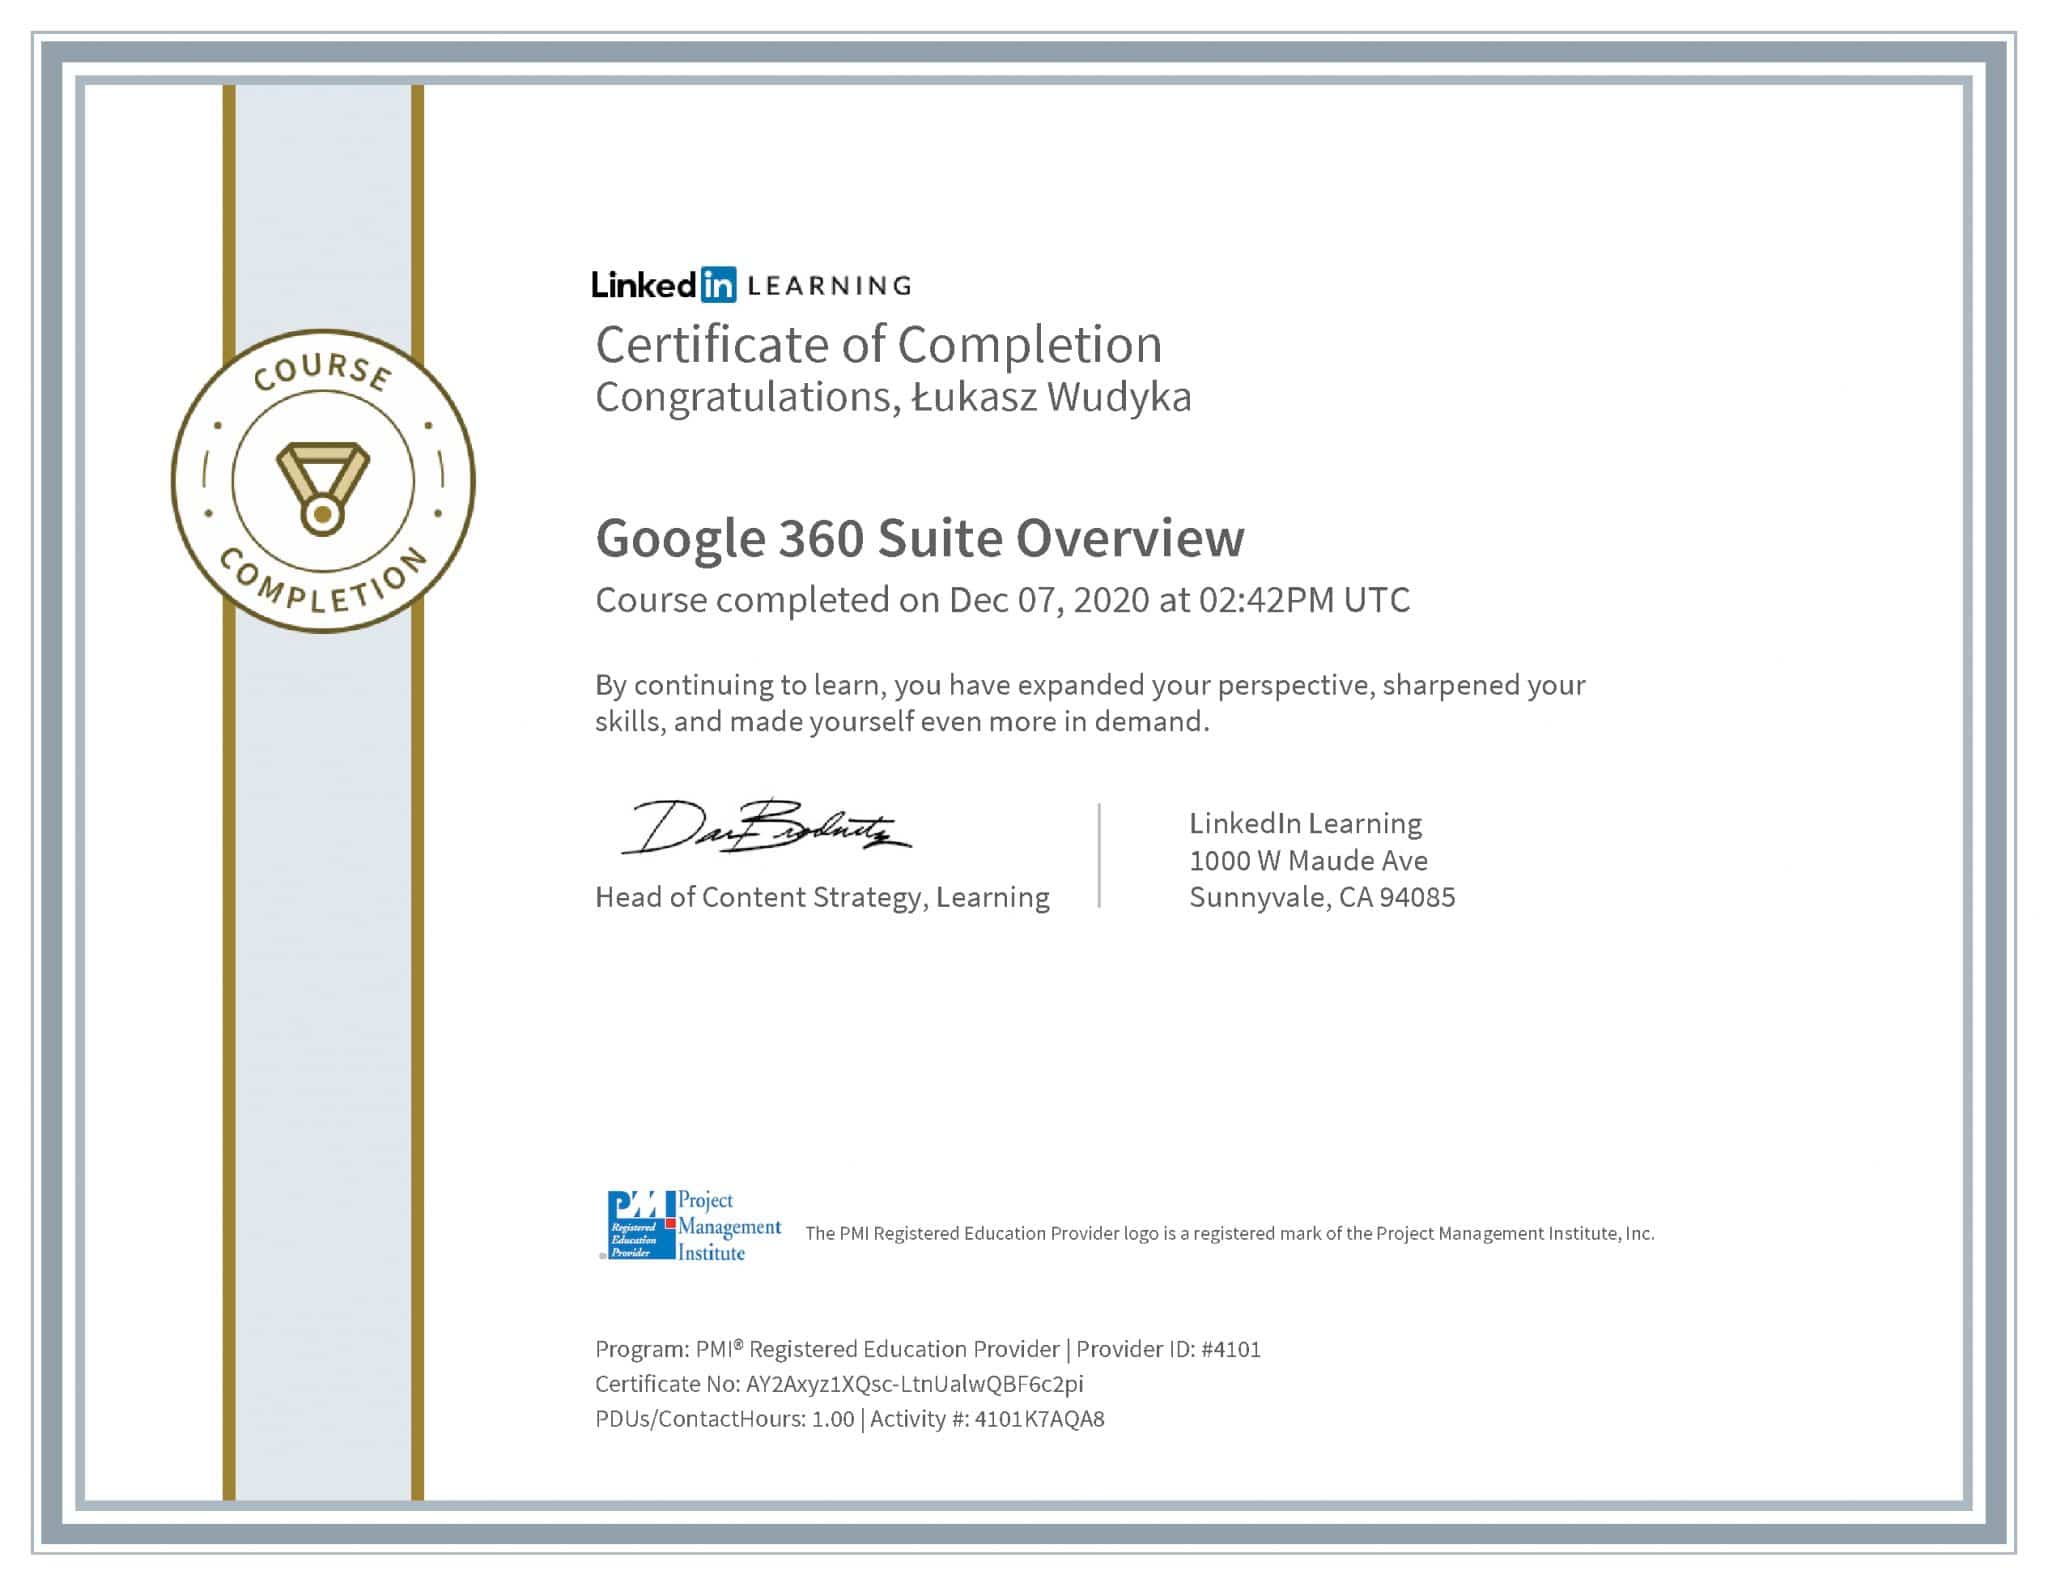 Łukasz Wudyka certyfikat LinkedIn Google 360 Suite Overview PMI